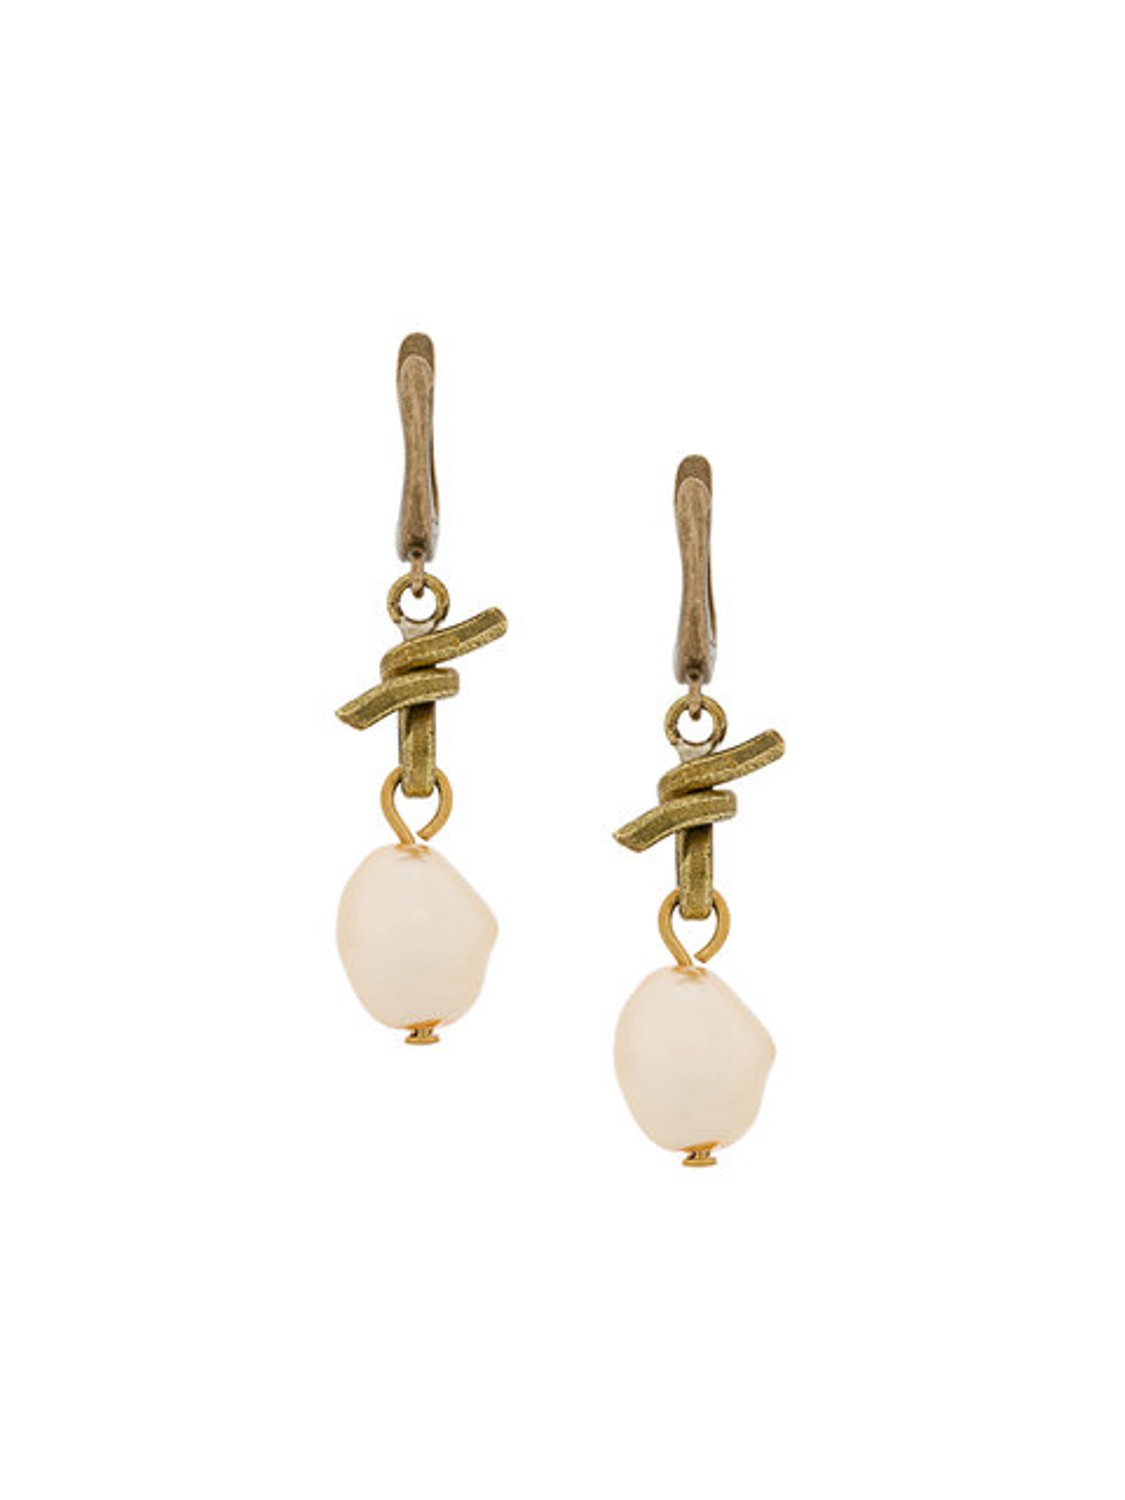 shop Marni Sales Bijoux: Orecchini Marni, chiusura bloccata dietro, in ottone e perle.

Composizione: 100% ottone. number 1240